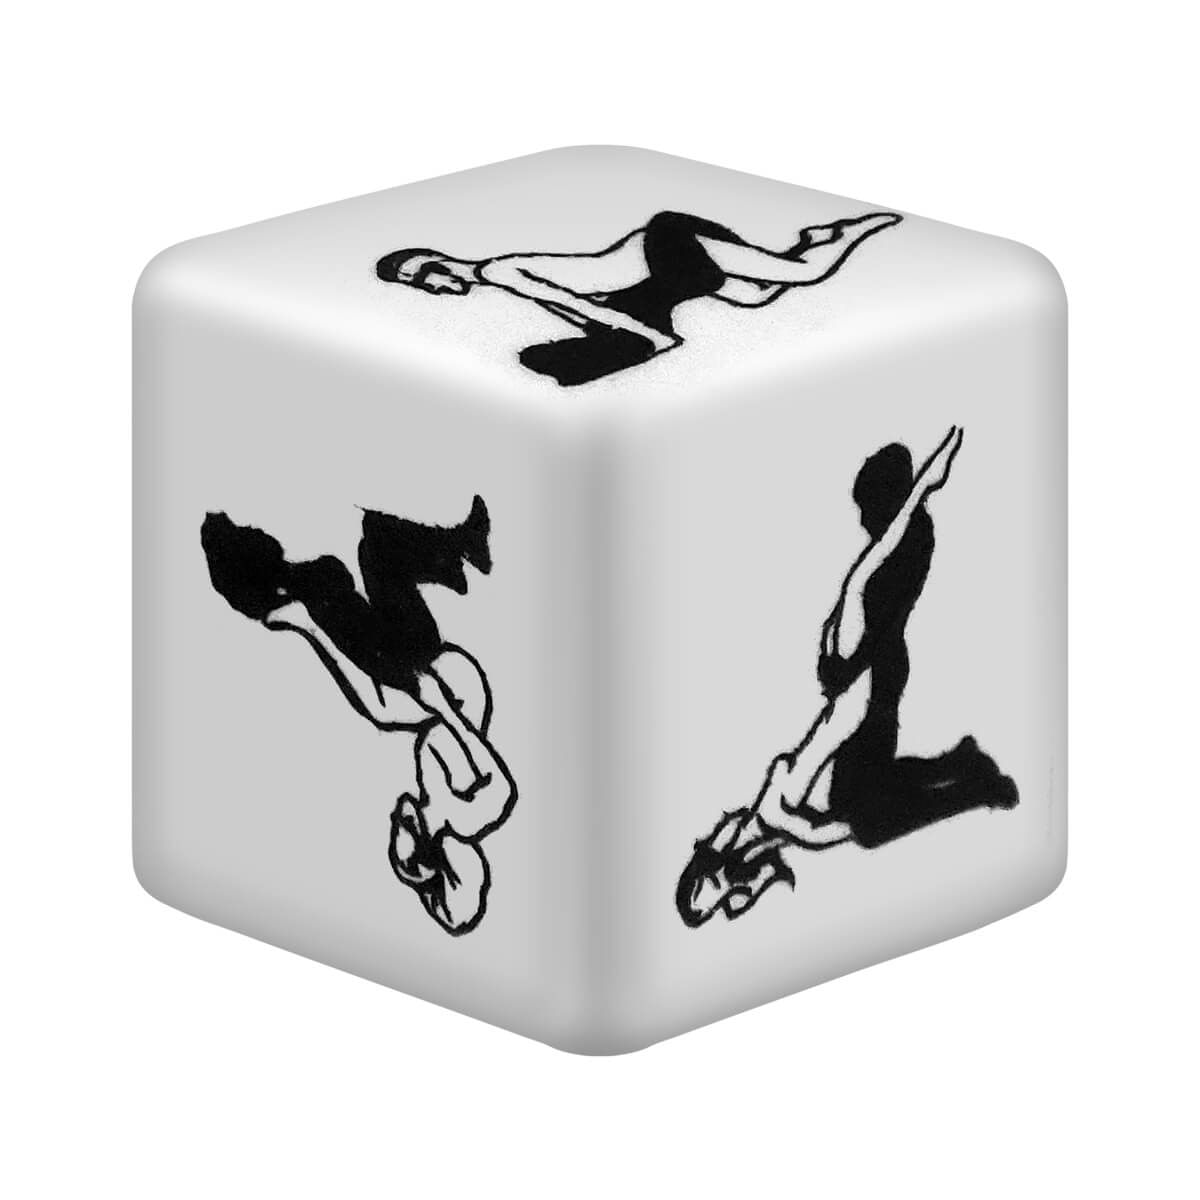 Dado Sexy Cube 3D Jogo do Prazer com Realidade Aumentada Diversão ao Cubo